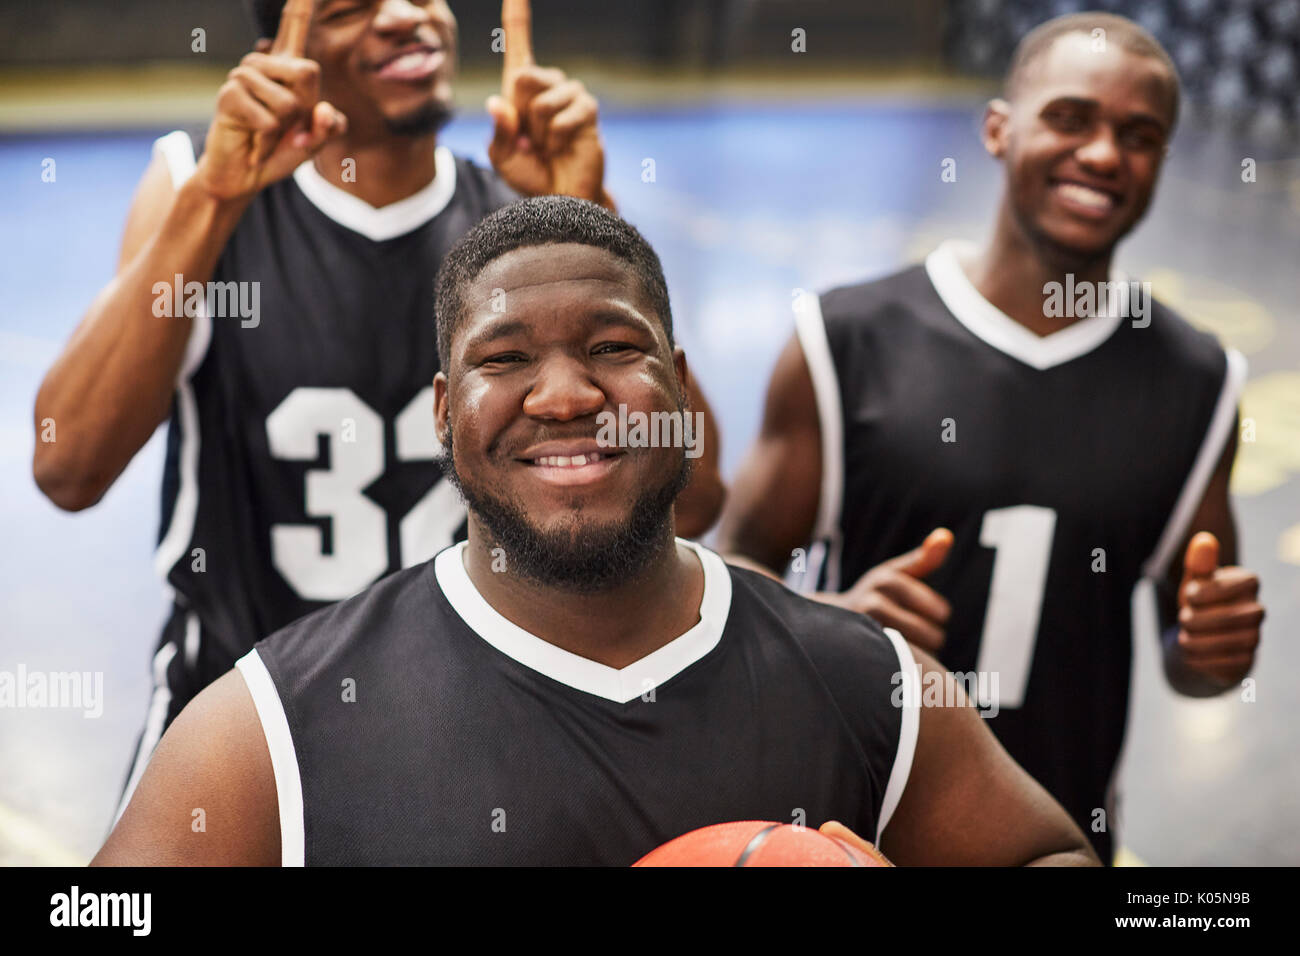 Ritratto sorridente e fiducioso maschio giovane giocatore di basket team in nero maglie gesticolando, celebrando la vittoria Foto Stock